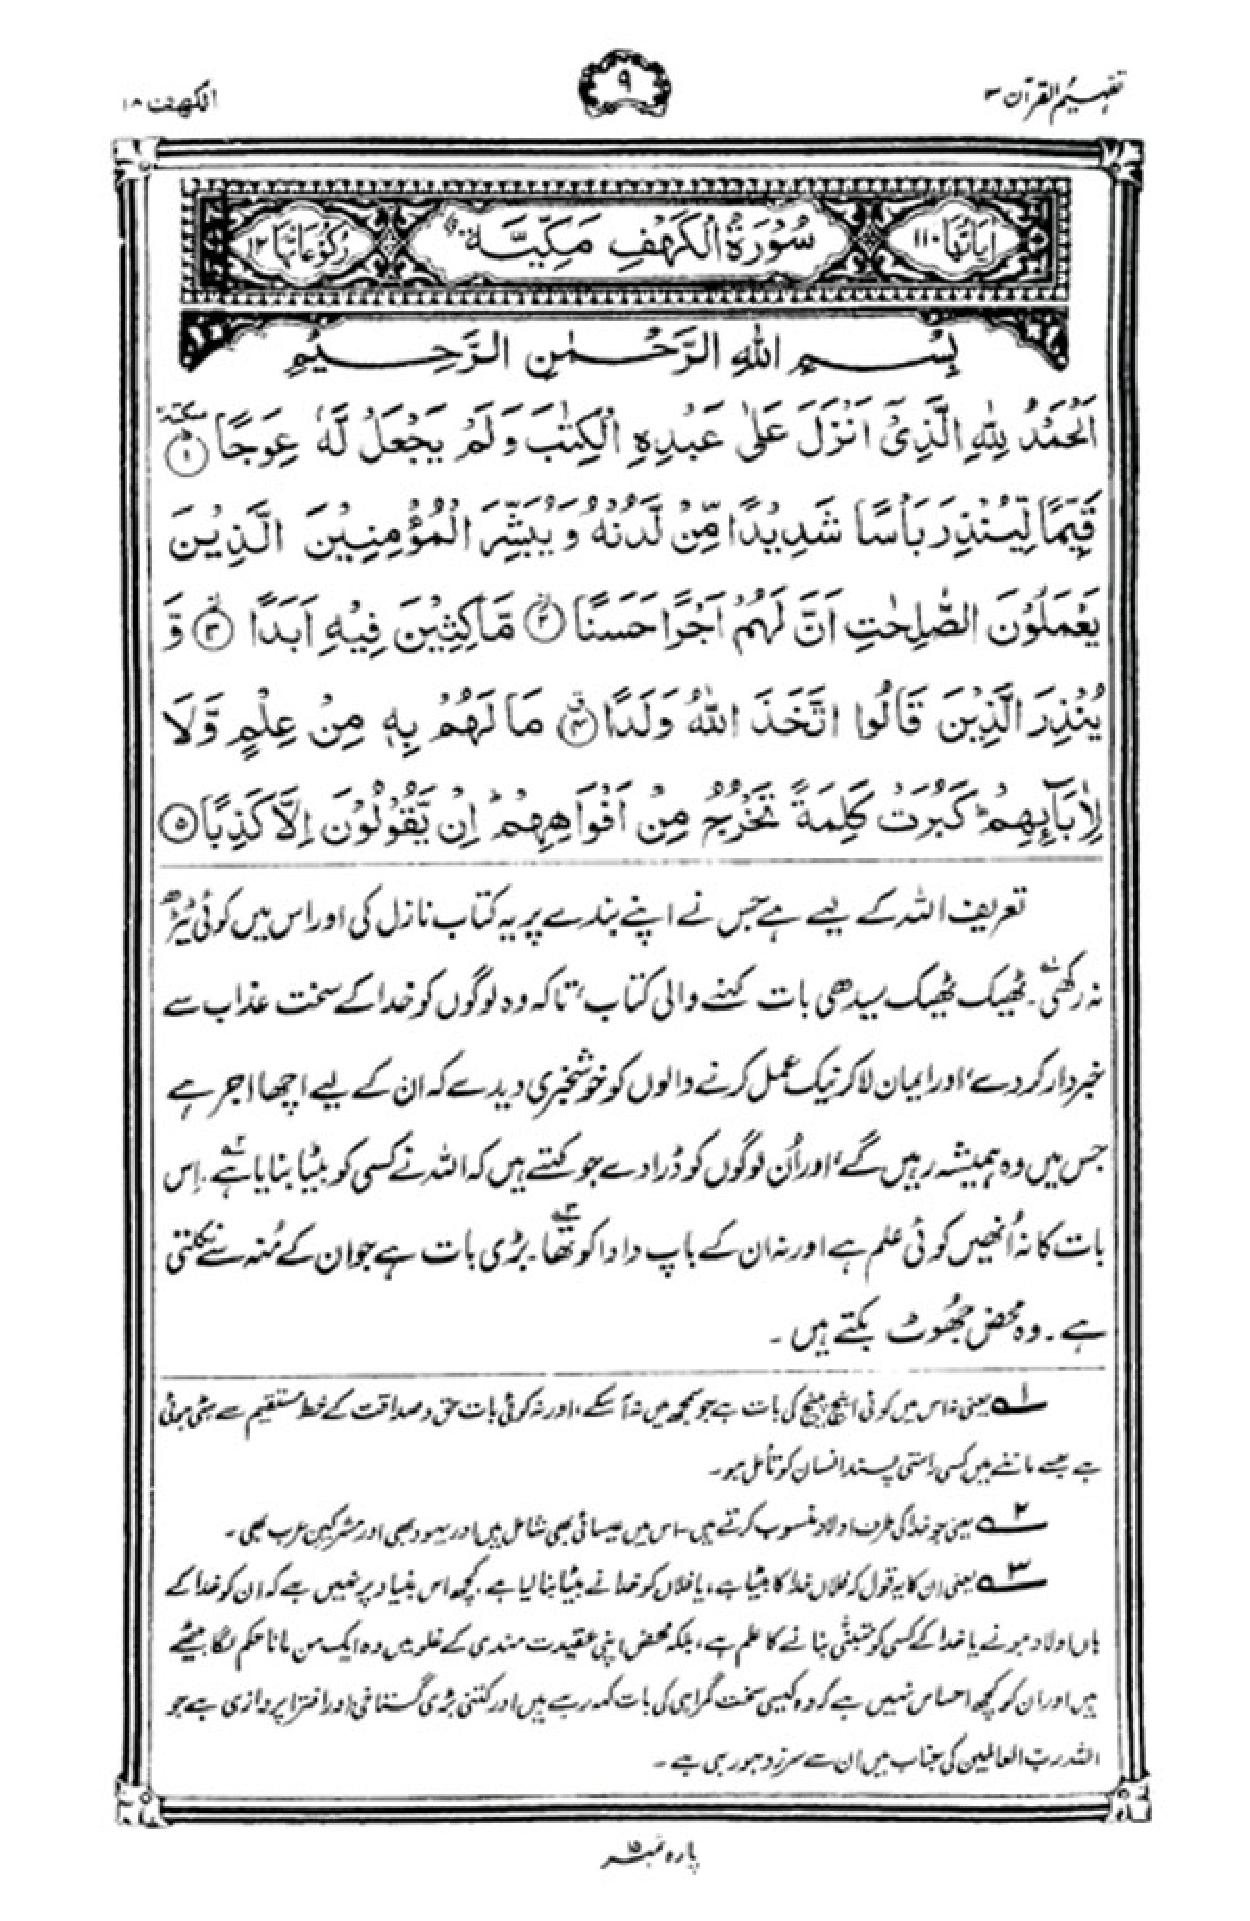 quran tafseer by shia scholars in urdu